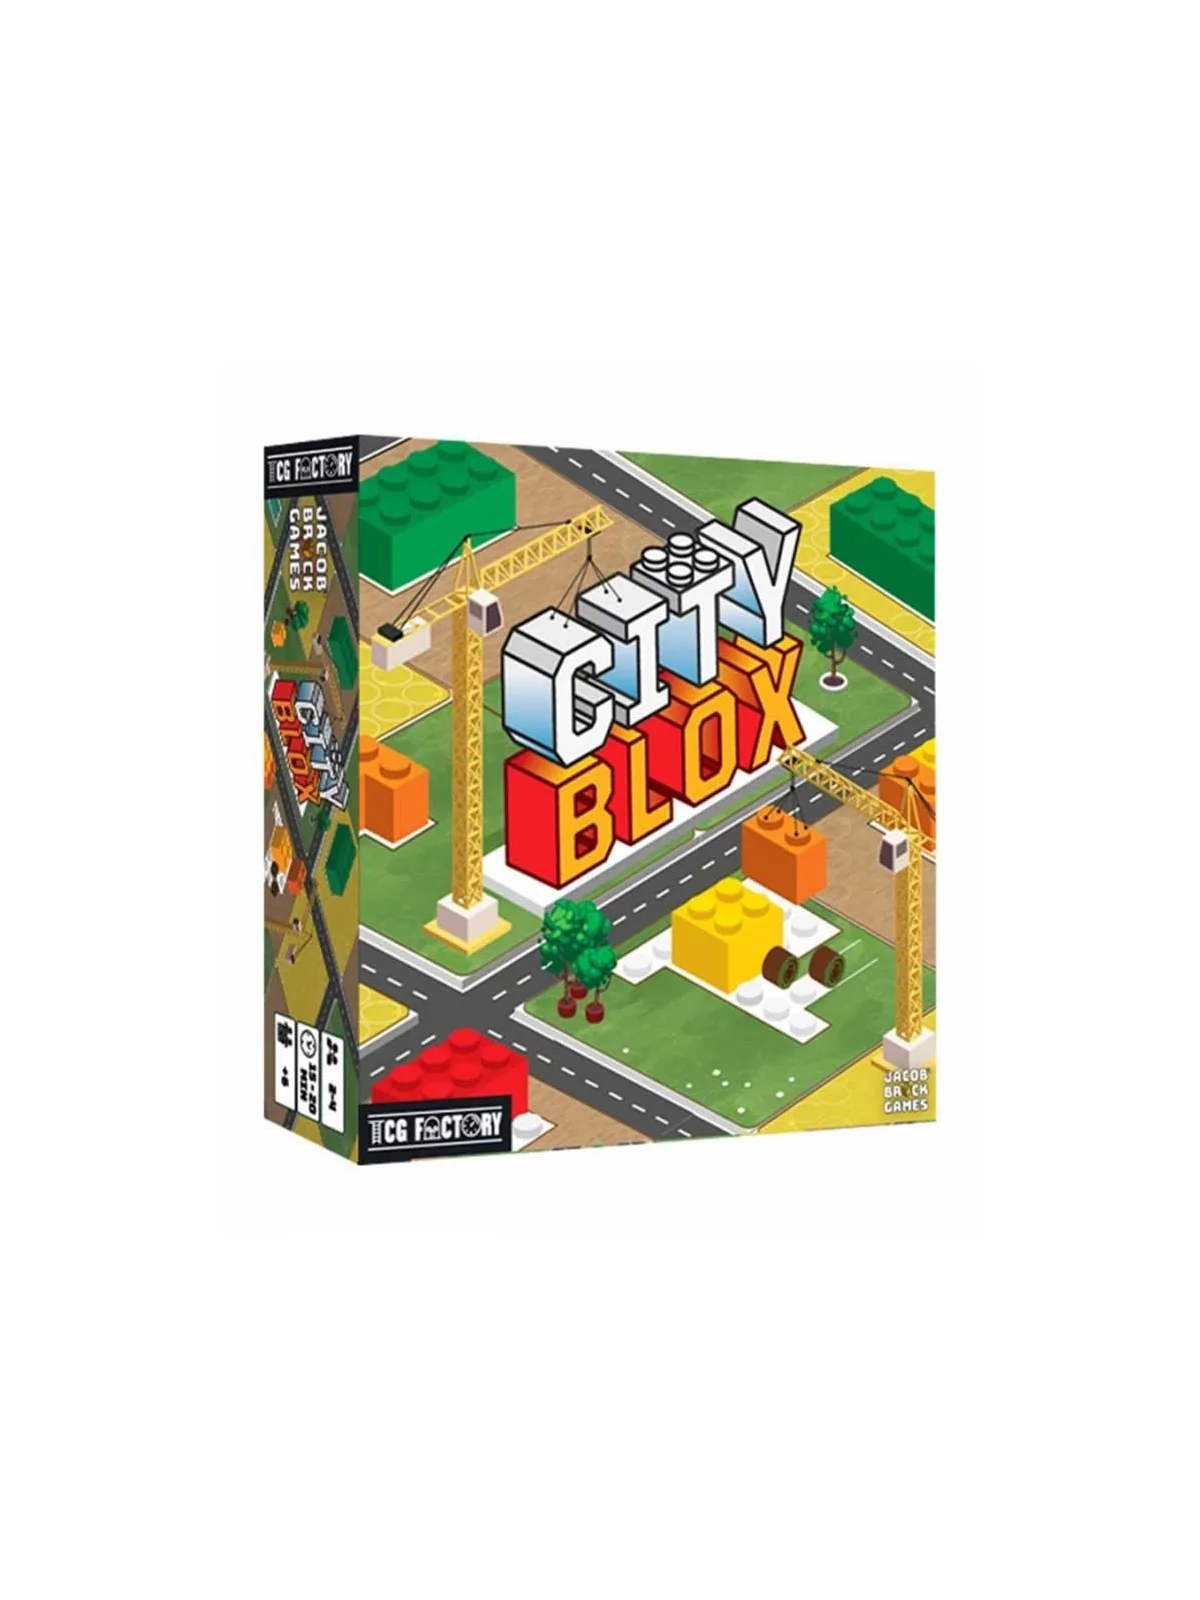 Comprar City Blox barato al mejor precio 22,46 € de TCG Factory